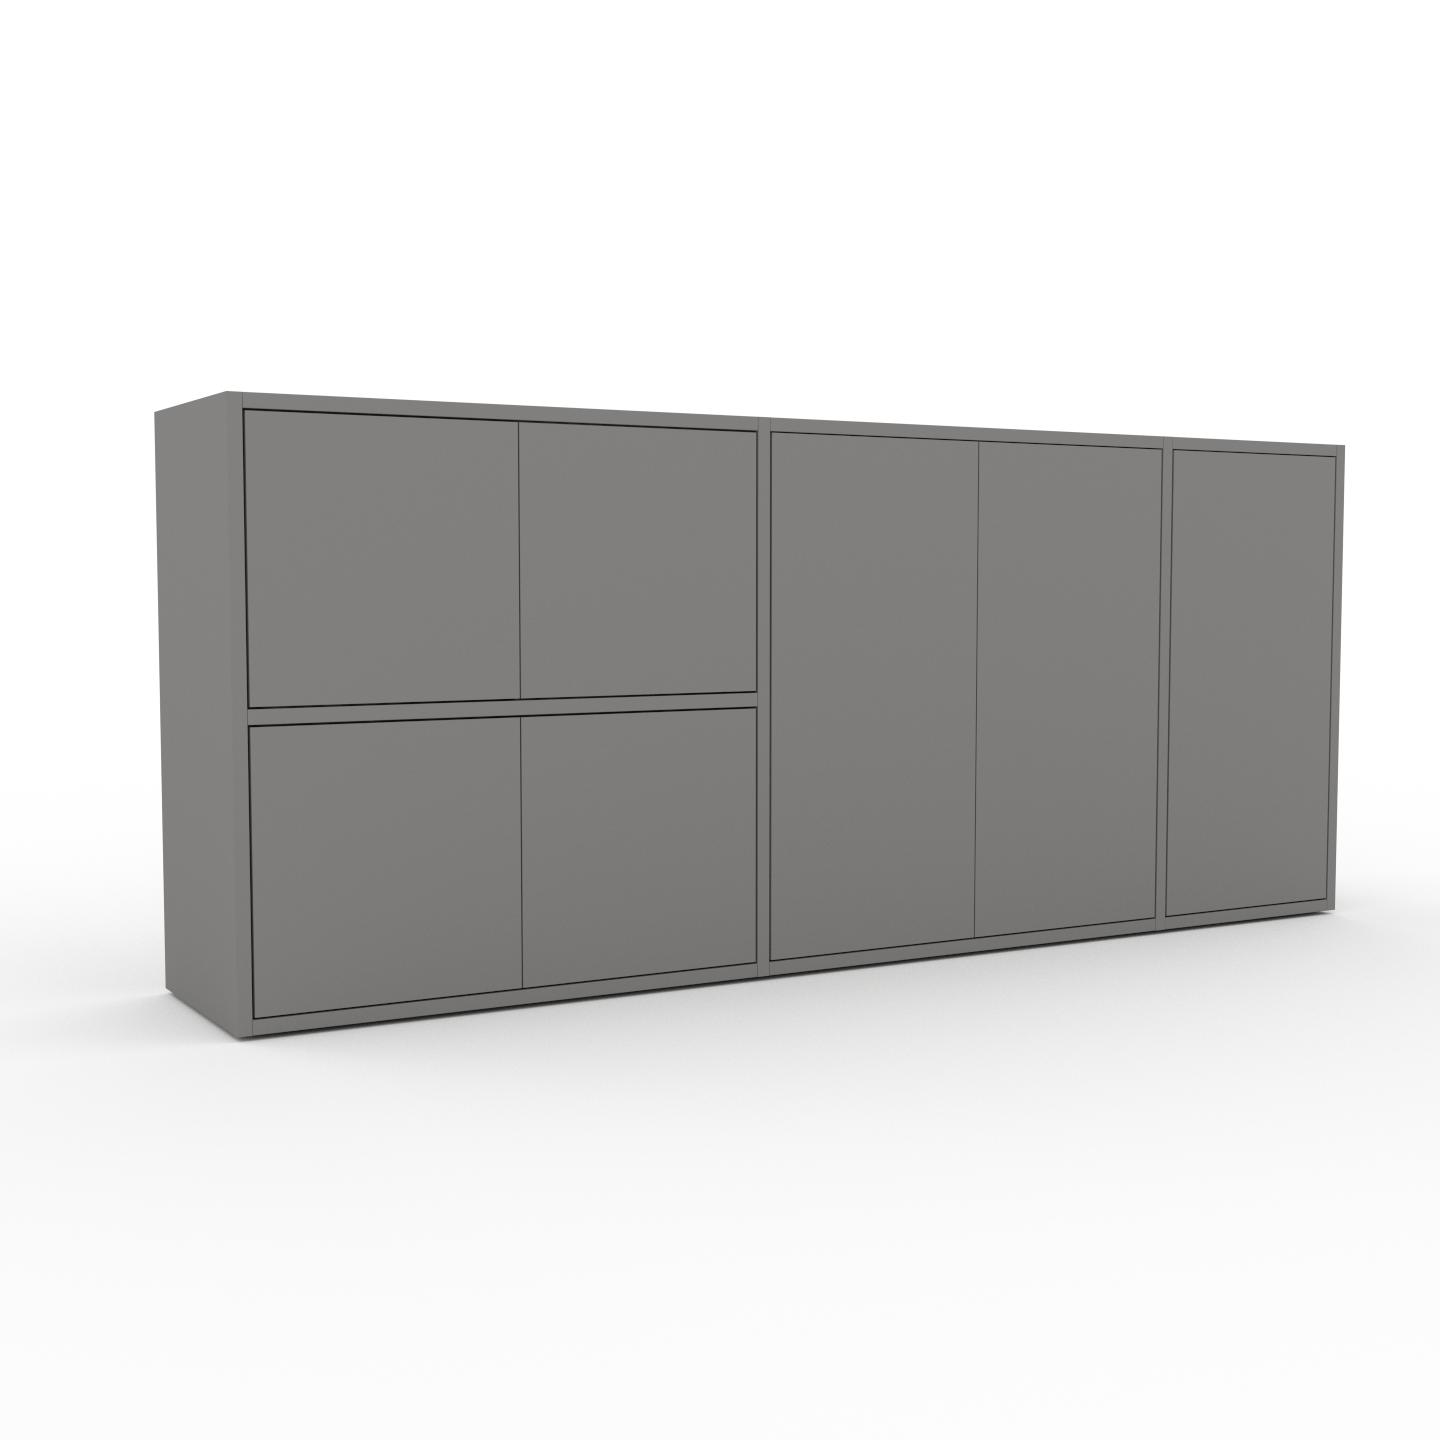 MYCS Bücherregal Grau - Modernes Regal für Bücher: Türen in Grau - 190 x 80 x 35 cm, Individuell konfigurierbar